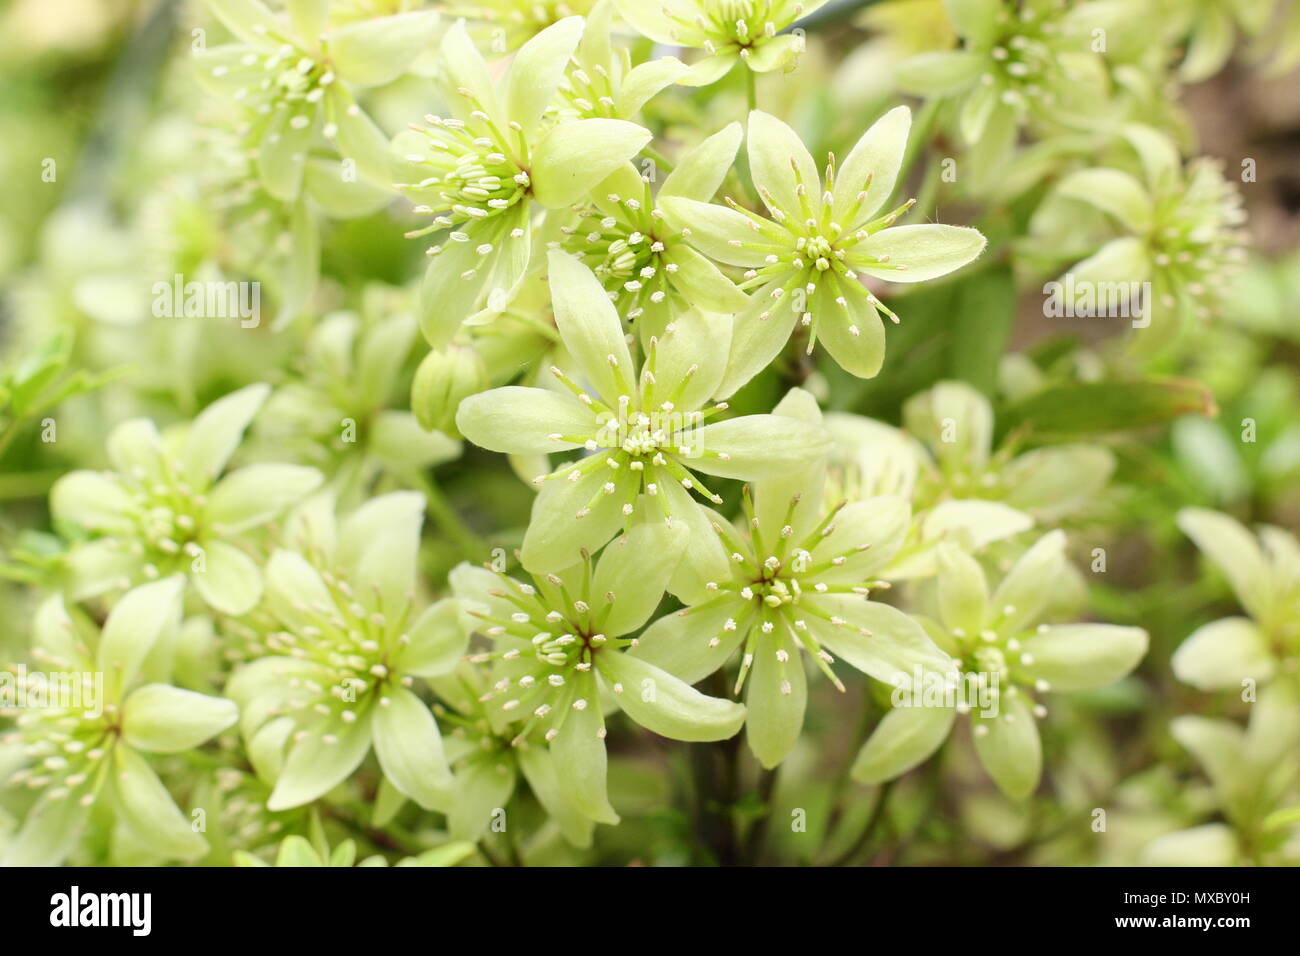 La clematide cartmanii 'fragrante Oberon', un sempreverde clematis, in fiore in primavera (maggio), Inghilterra, Regno Unito Foto Stock